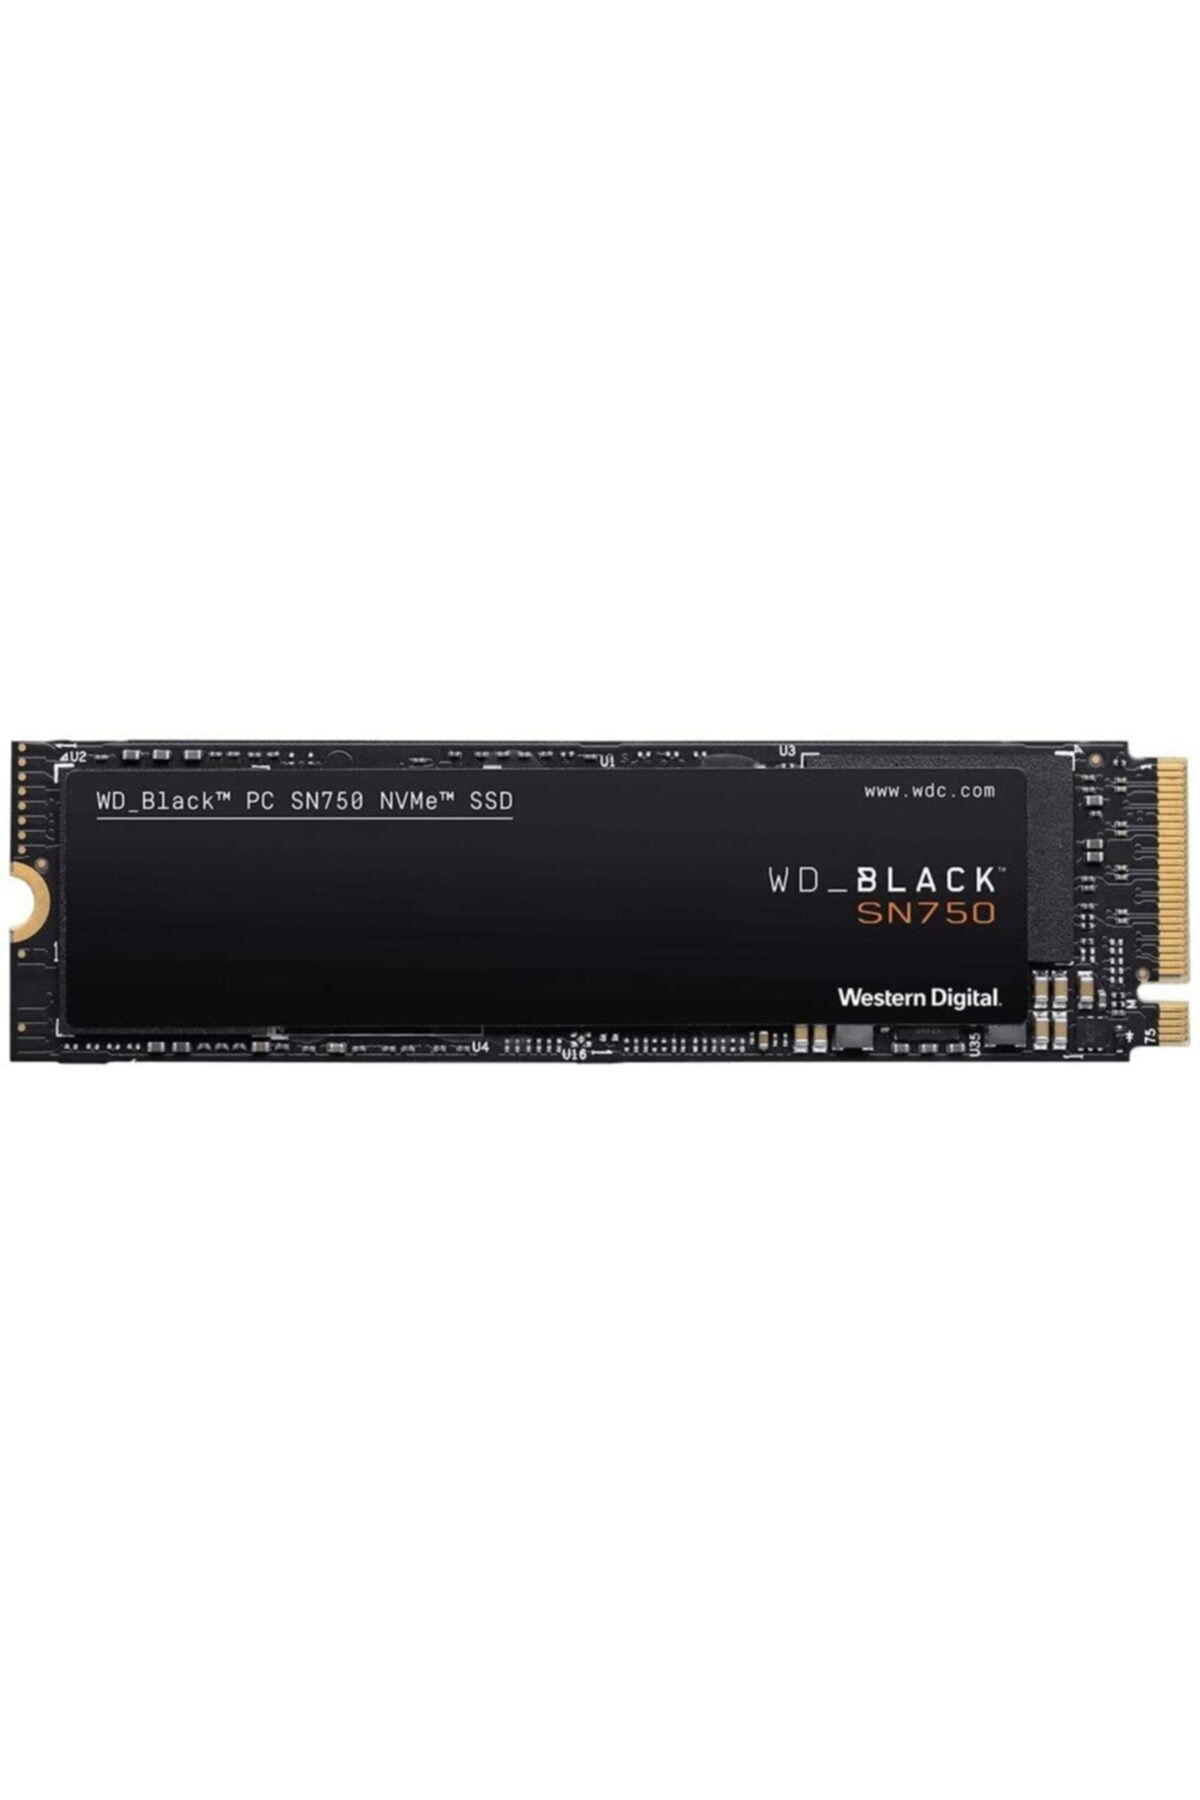 WD Black Sn750 Nvme 1tb Brpg0010bnc-wrsn 3470mb-3000mb/s M.2 2280 Ssd